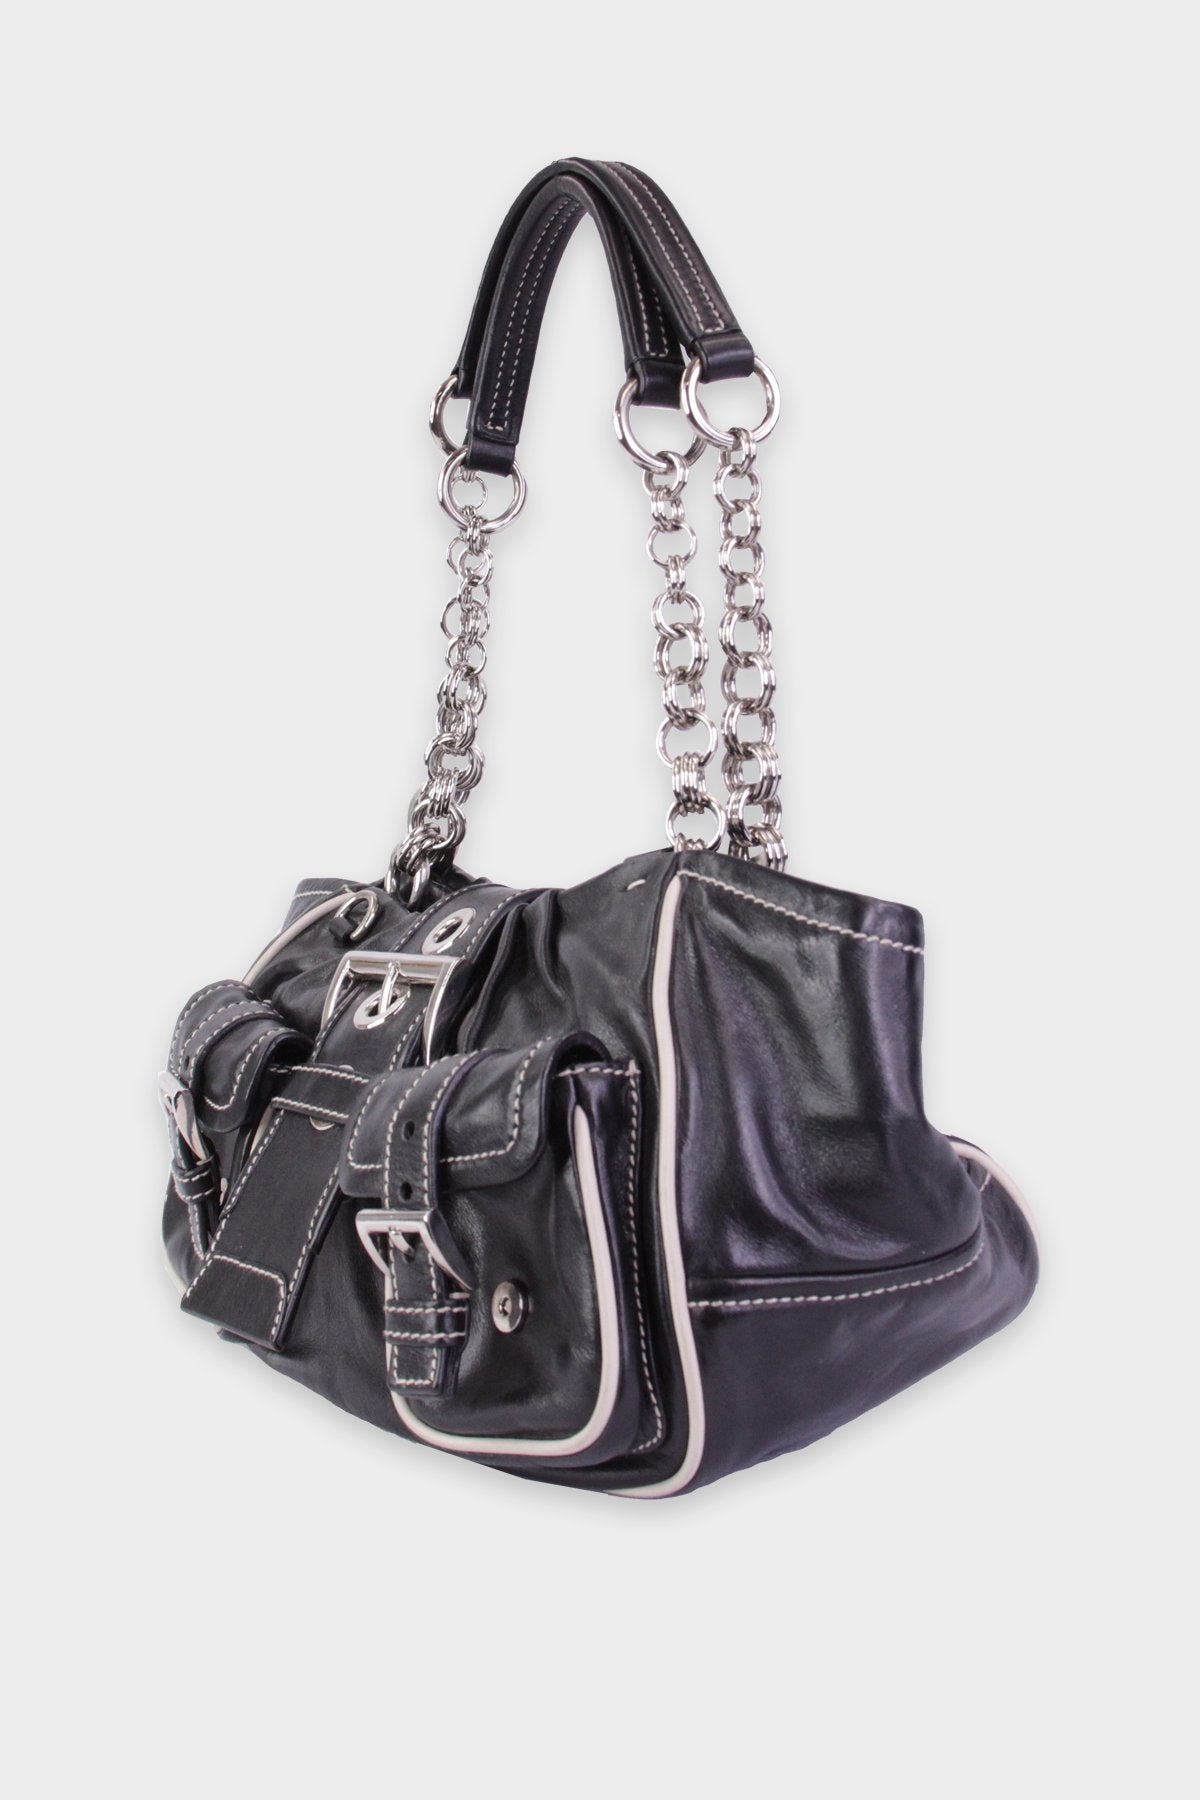 Prada Black Leather Handbag - shop-olivia.com